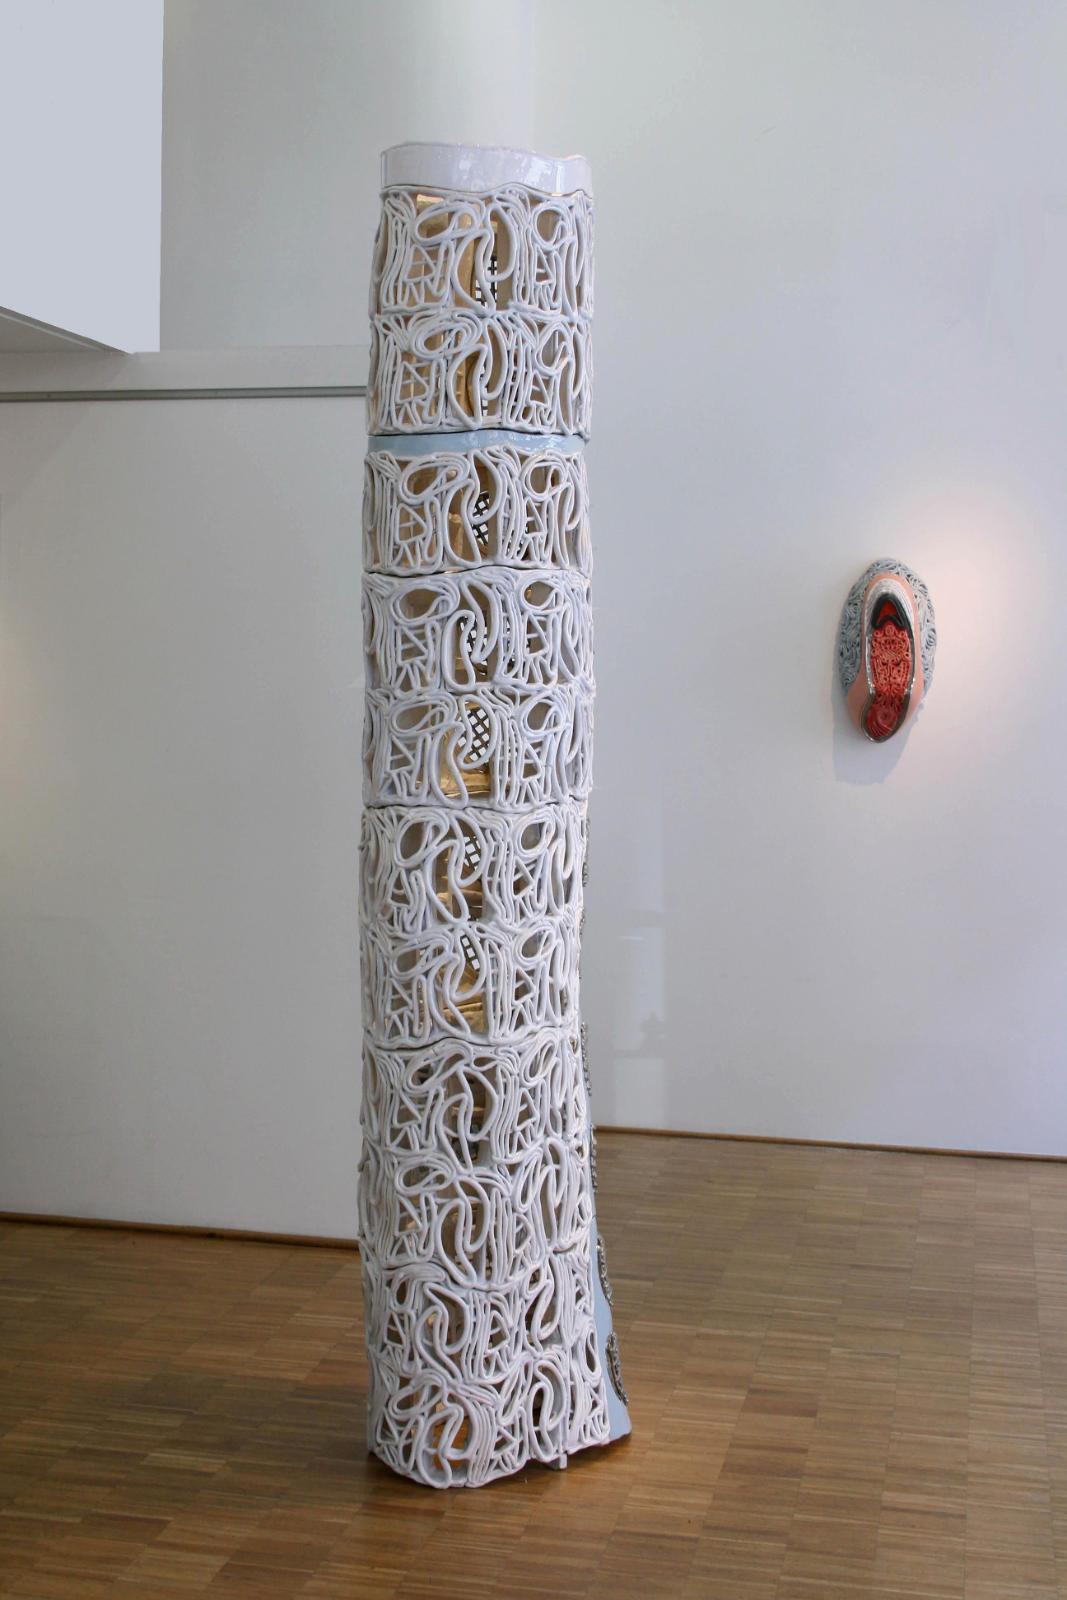 Stephan Hasslinger, Cryzolite, Keramik und Glasuren, 255 cm x 60 cmx 65 cm, Preis auf Anfrage, Galerie Cyprian Brenner